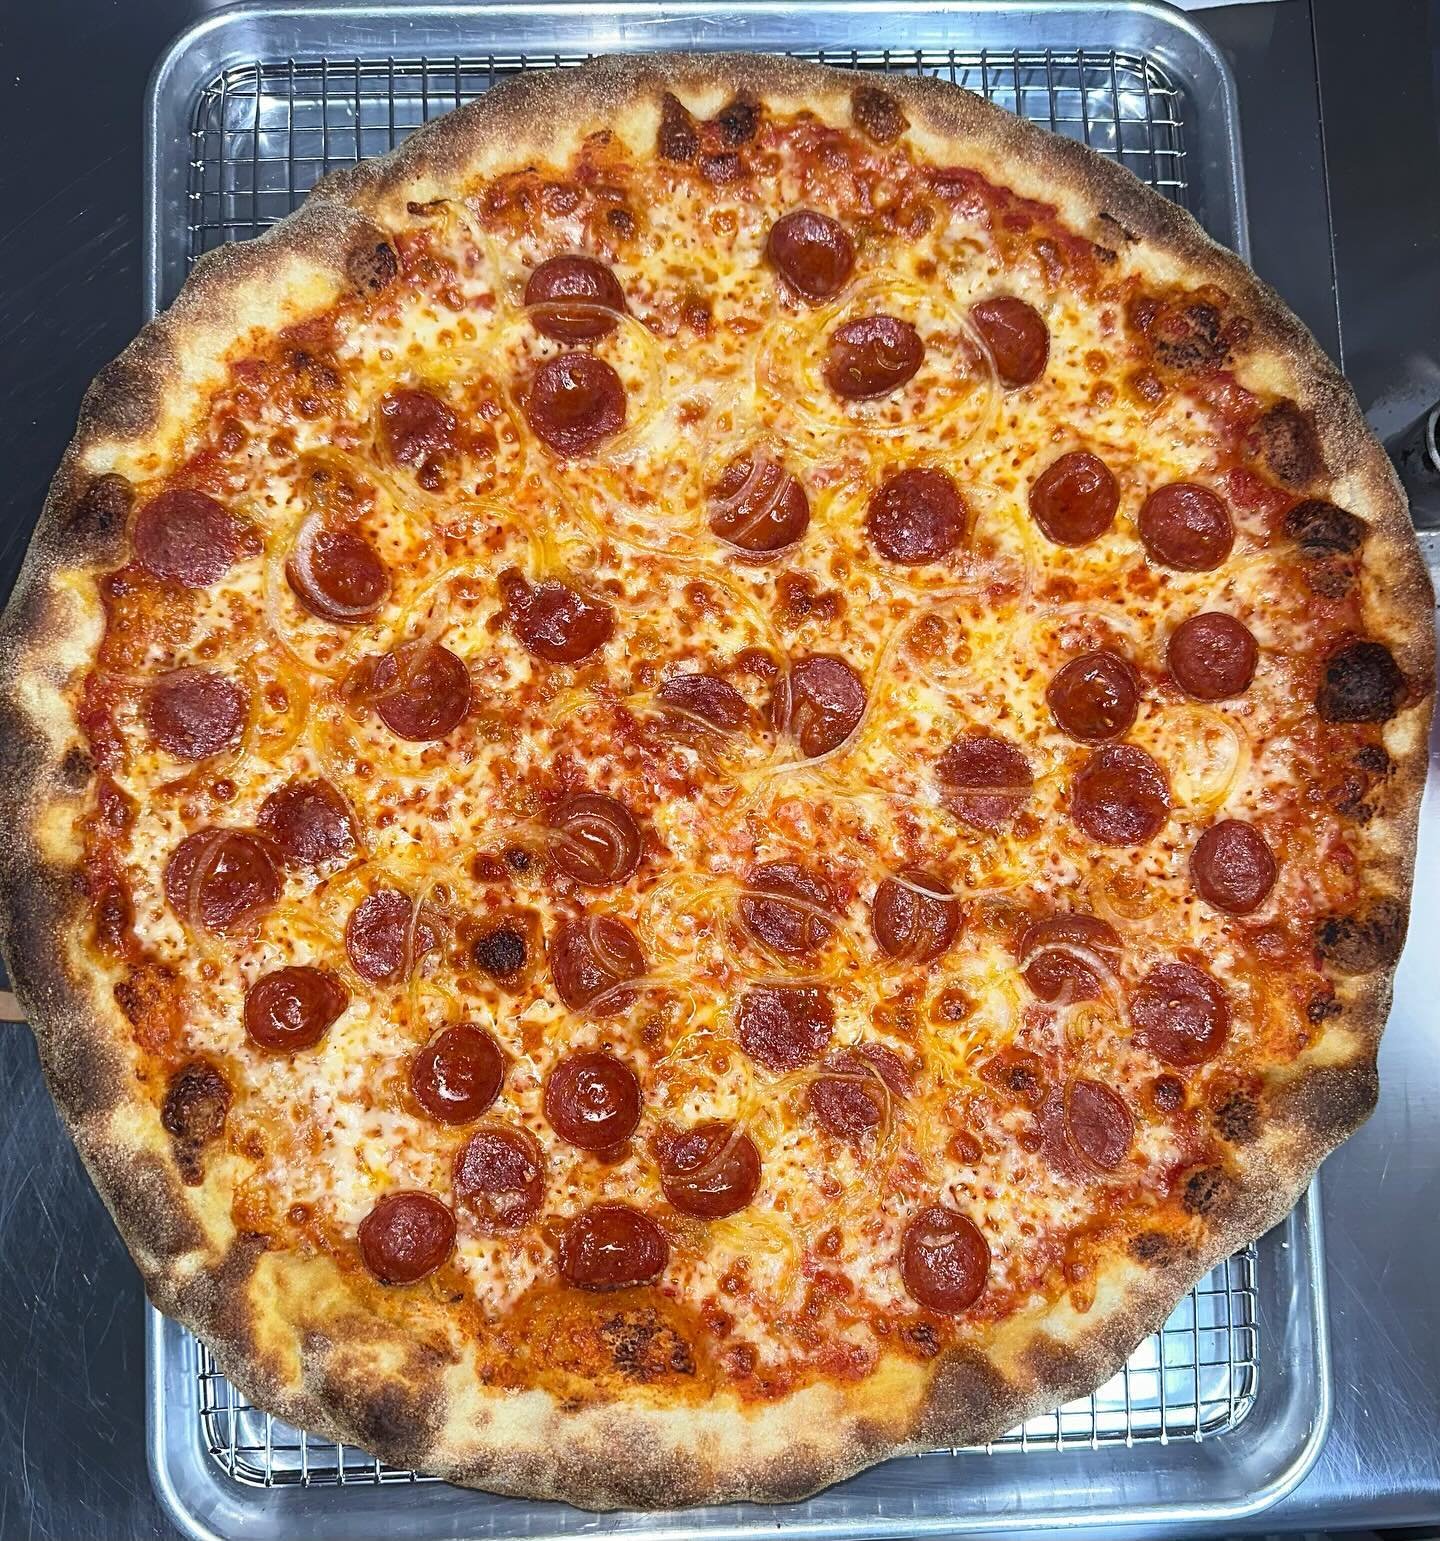 Just the classic ol&rsquo; pepp &amp; onion for ya 🍕🧅
.
.
.
#feralpizza #feralpizzaatx #austinpizza #atxpizza #pizzaatx #atxfoodtruck #austintexas #austintx #atx #hydepark #hydeparkatx #atxfood #atxpizzeria #pizza #pizzeria #womeninpizza @womeninpi